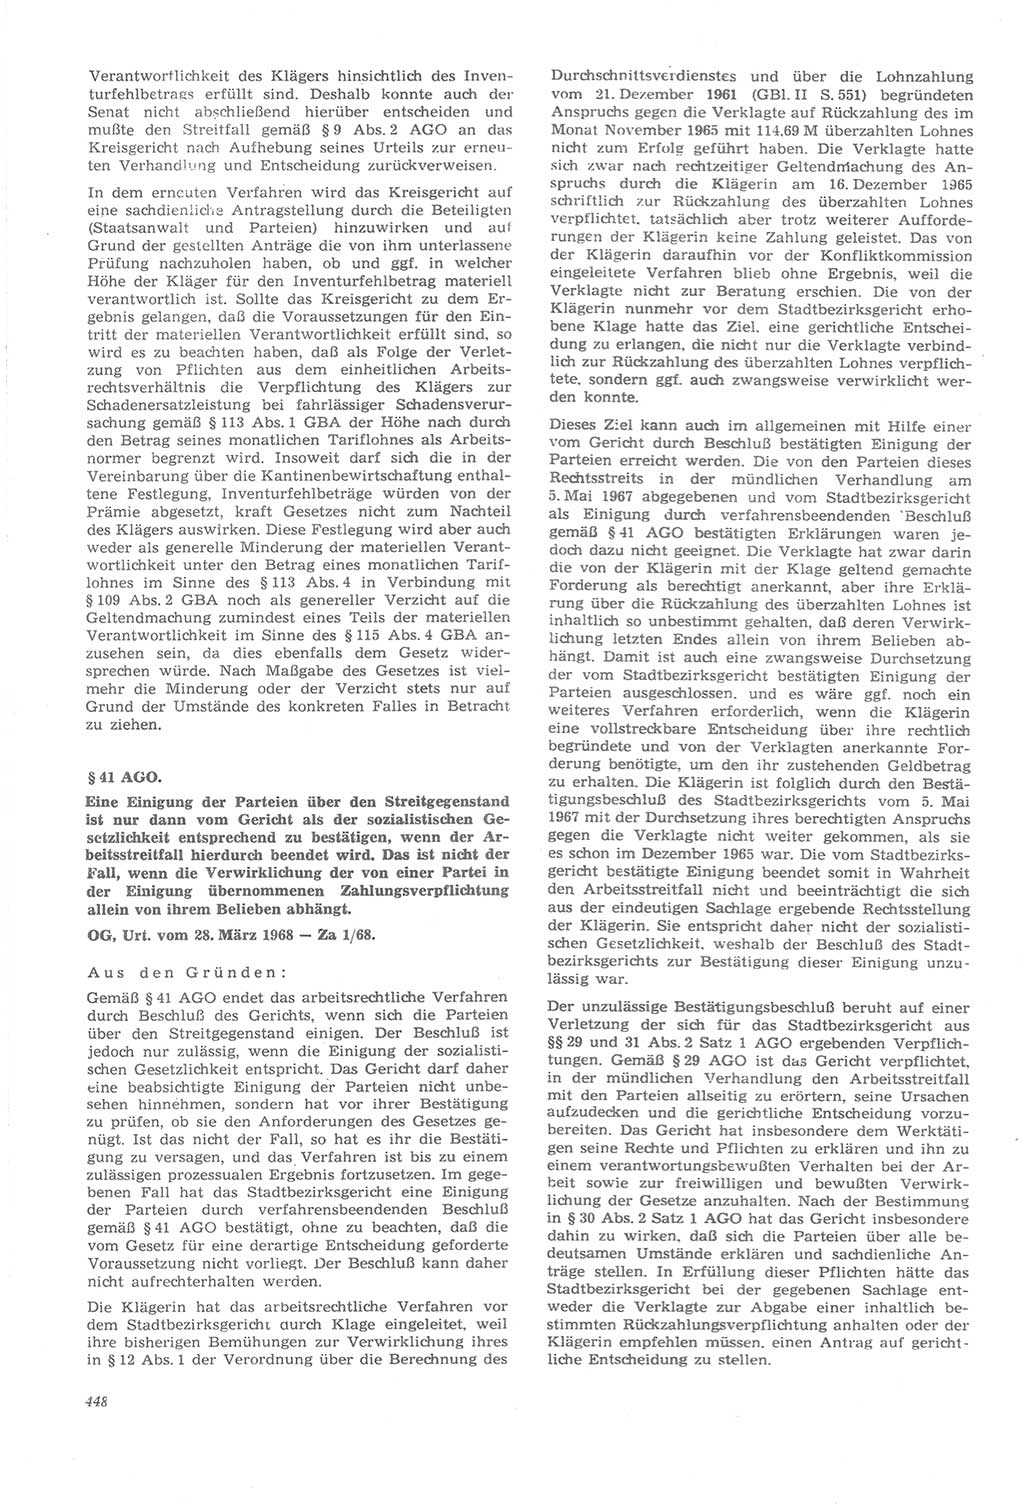 Neue Justiz (NJ), Zeitschrift für Recht und Rechtswissenschaft [Deutsche Demokratische Republik (DDR)], 22. Jahrgang 1968, Seite 448 (NJ DDR 1968, S. 448)